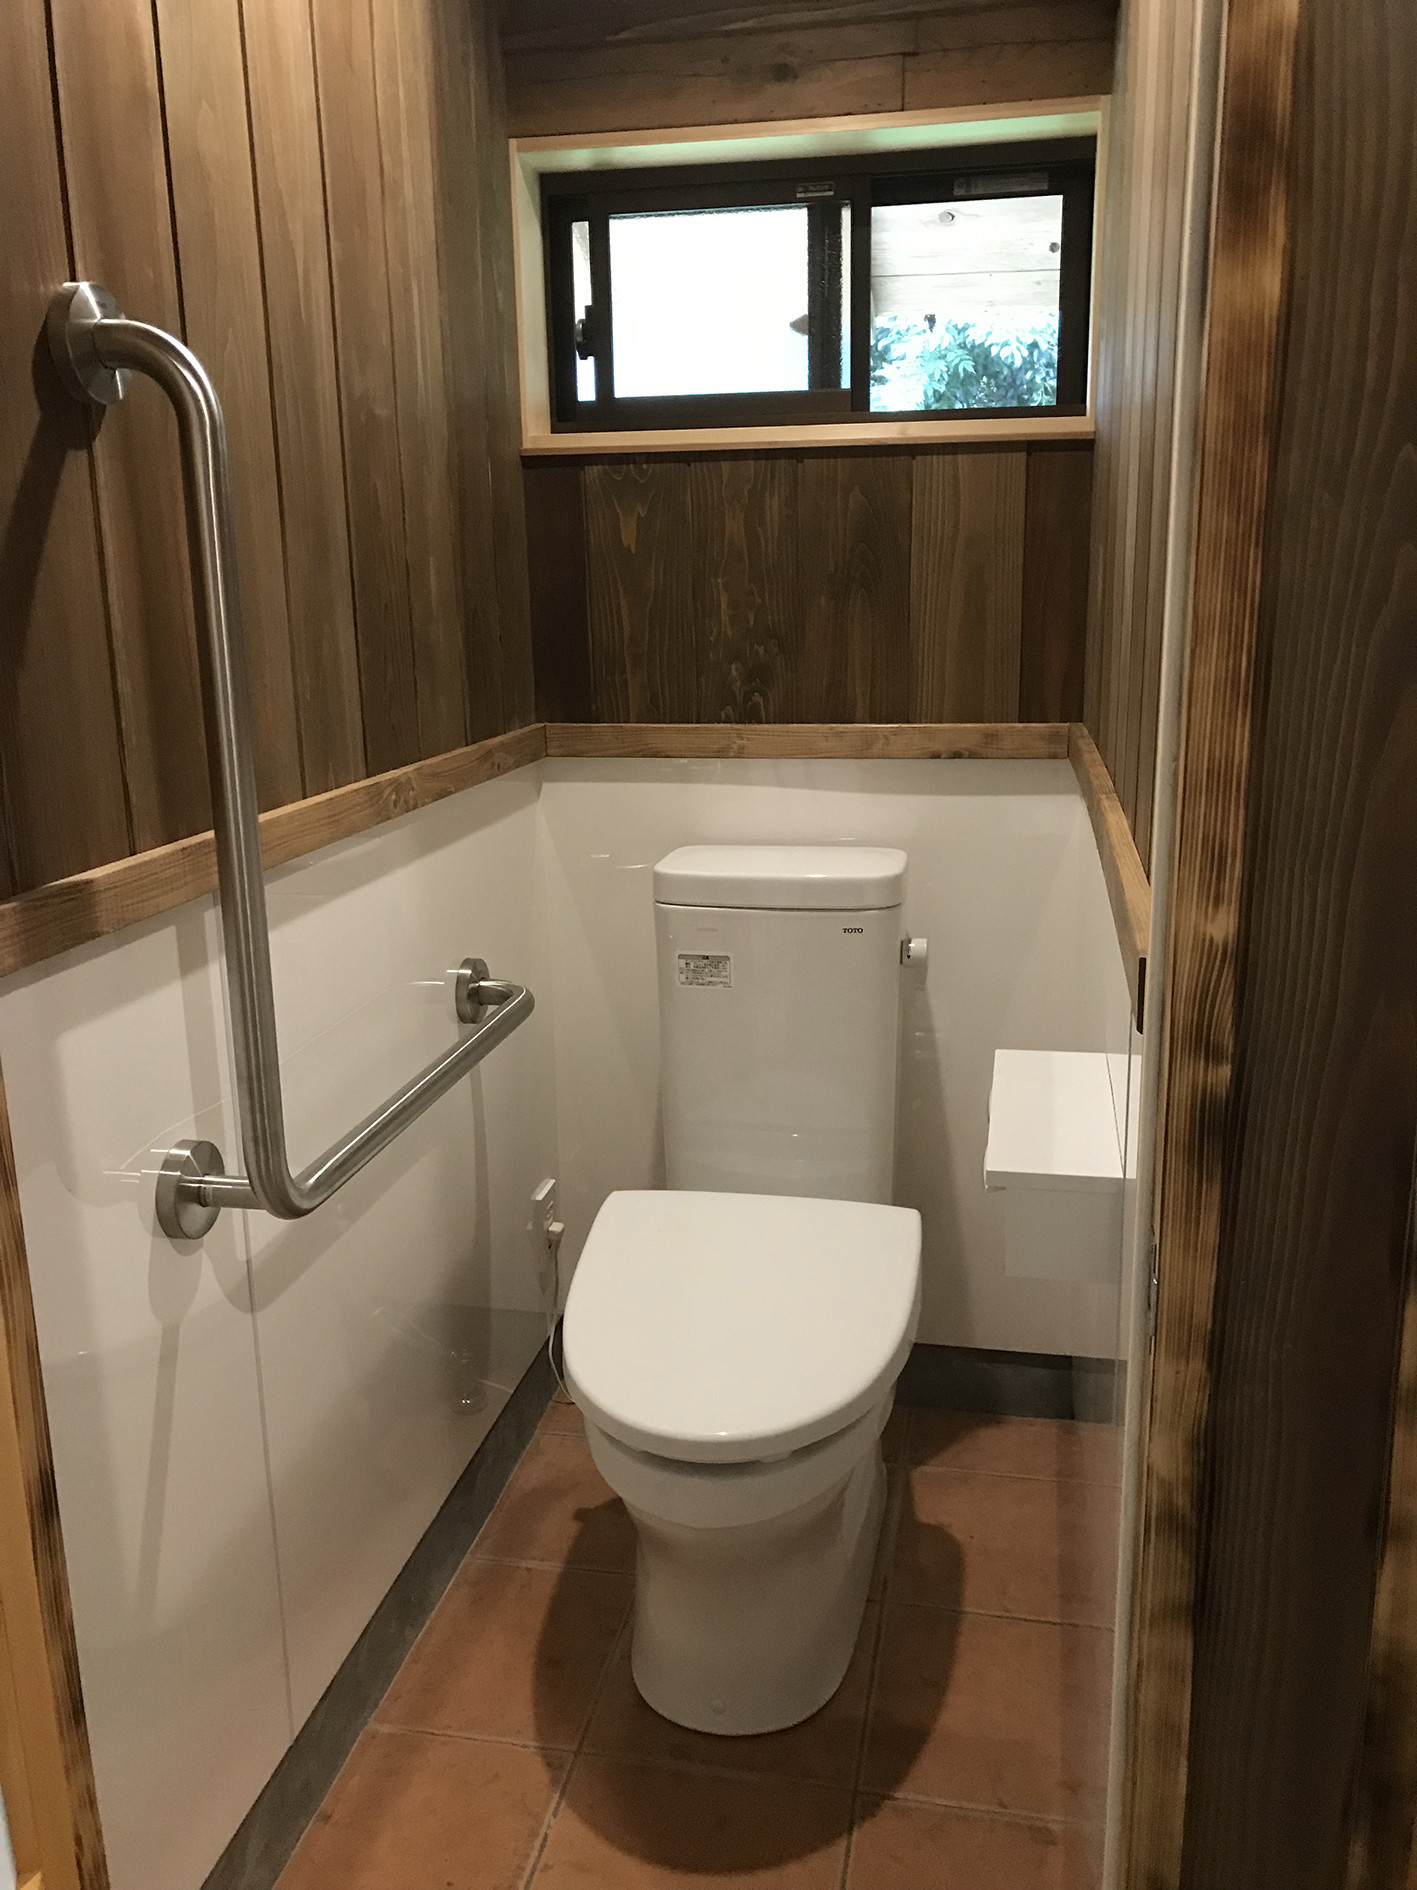 新城市上吉田集会所トイレ改修工事 新城で注文住宅の建設を手掛けている会社のブログページをご覧ください